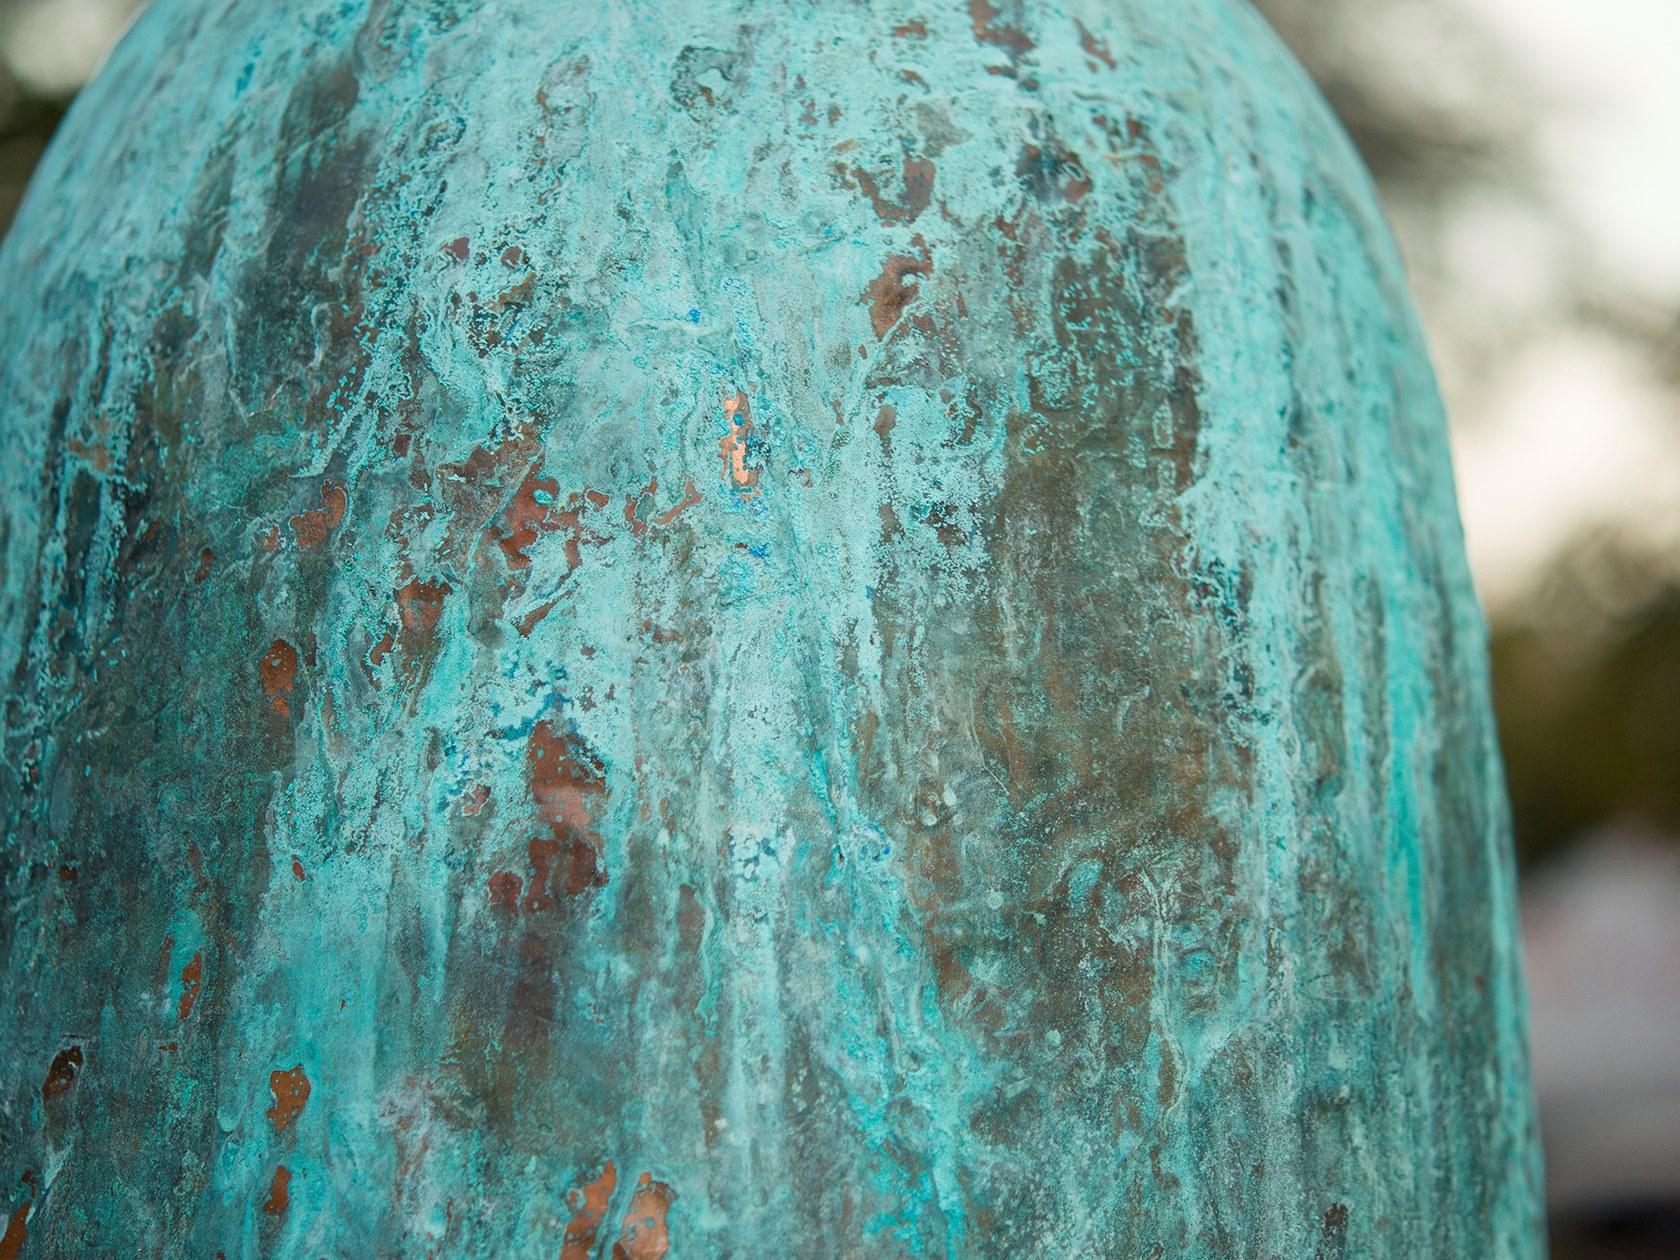 Lakuna kupferne hängelampe von Makhno
Abmessungen: D 37,5 x H 70 cm
MATERIALIEN: Kupfer

Alle unsere Lampen können je nach Land verkabelt werden. Wenn es in die USA verkauft wird, wird es zum Beispiel für die USA verkabelt.

Makhno Studio ist eine